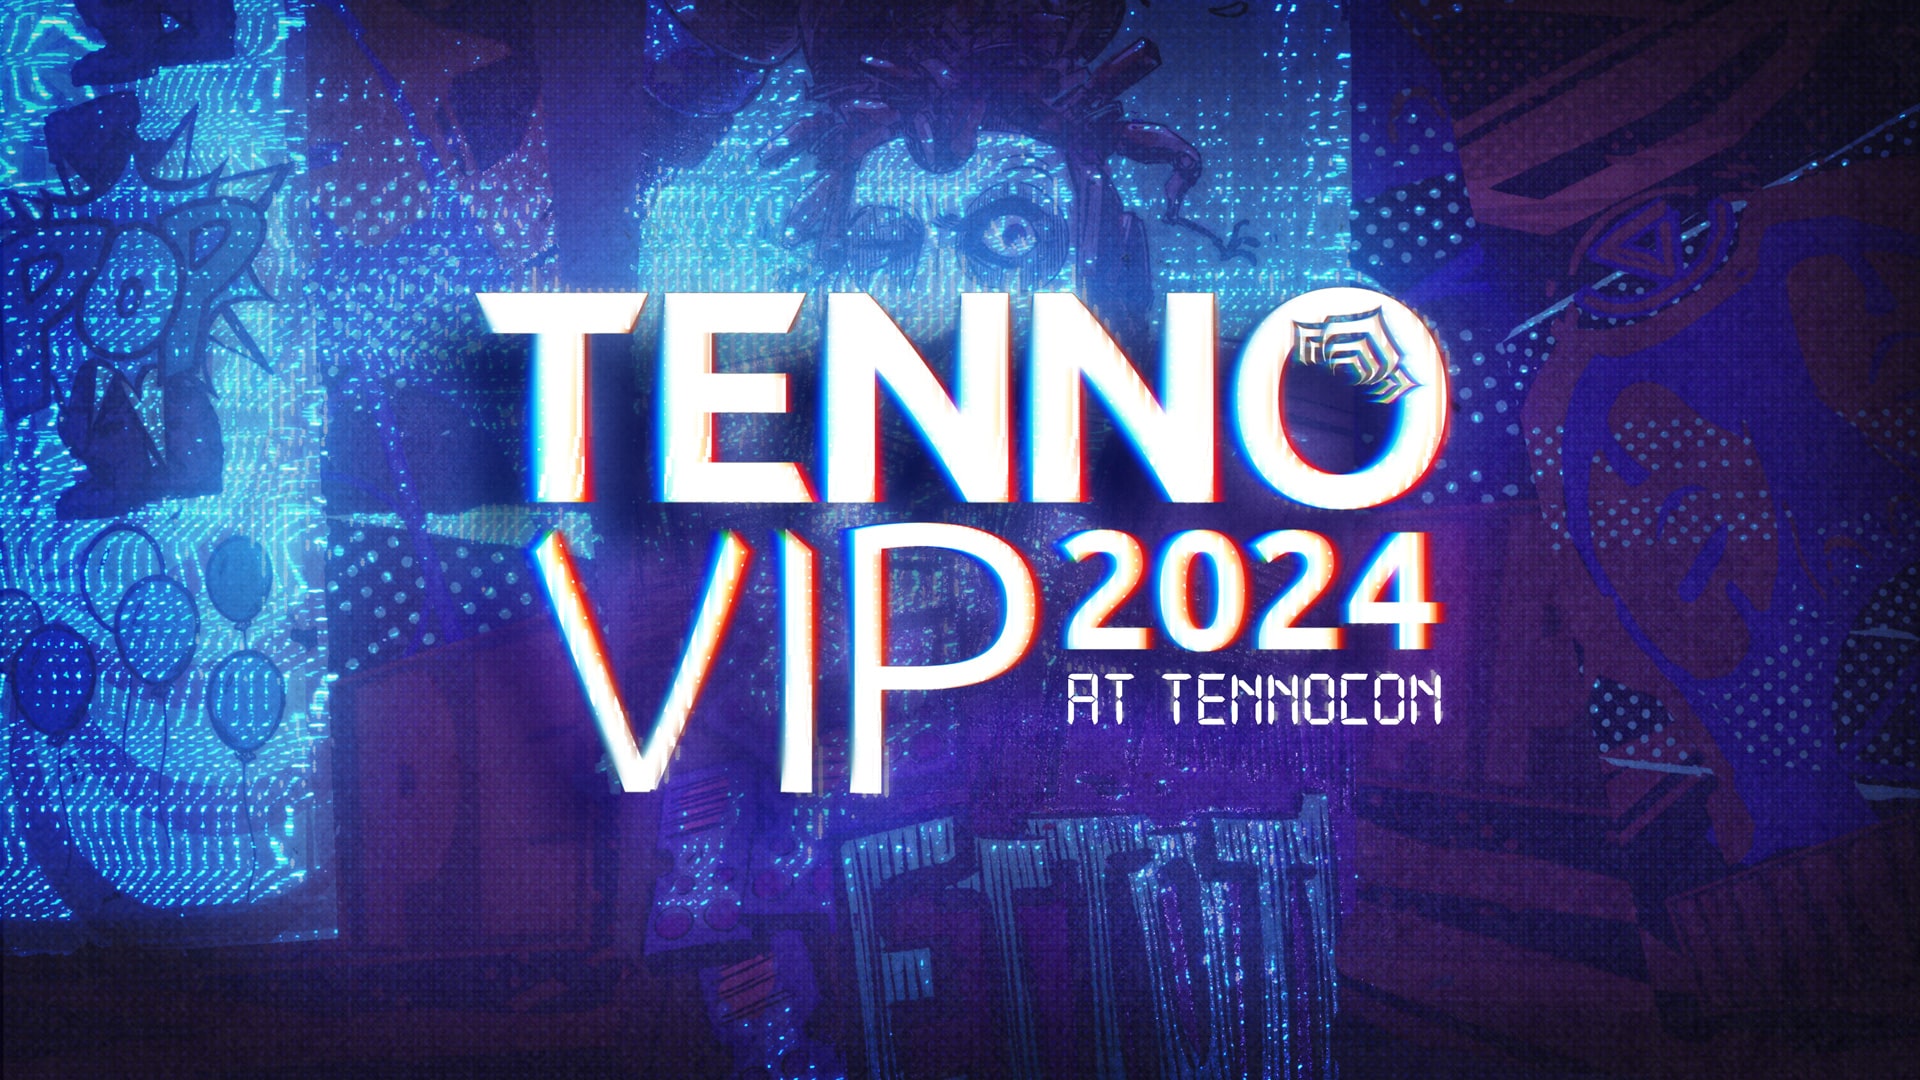 TennoVIP 커뮤니티의 밤